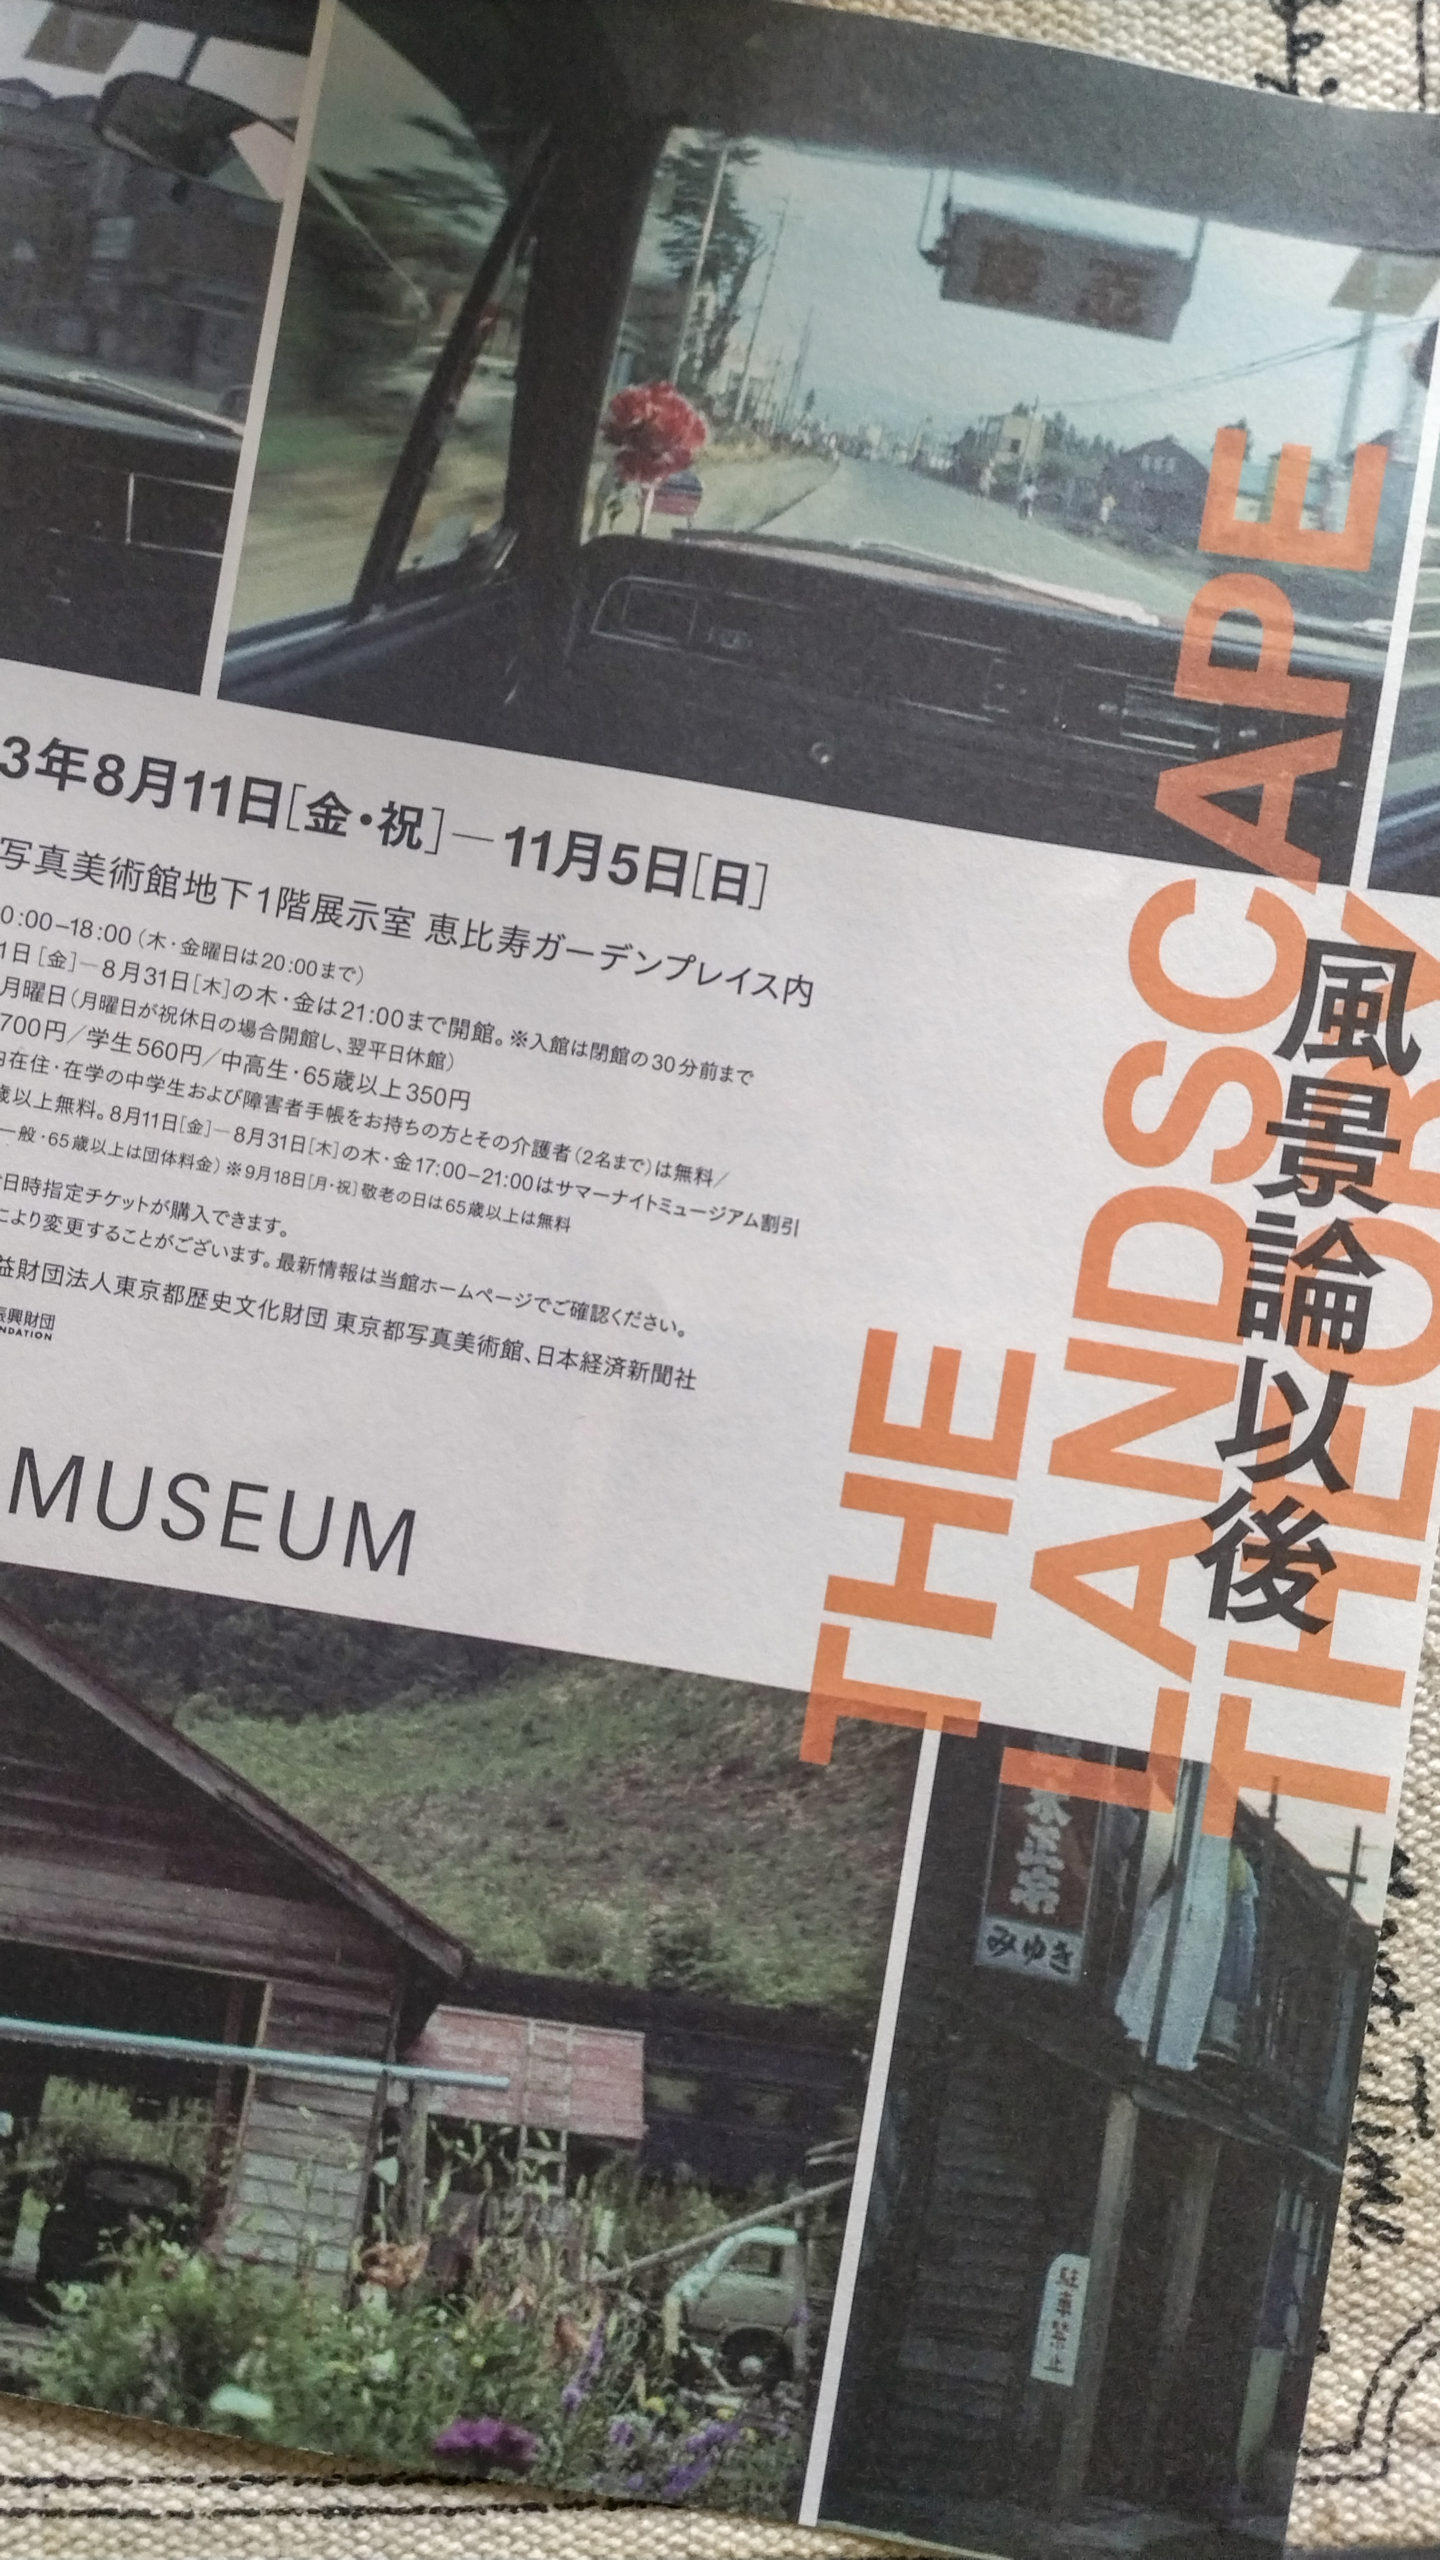 東京都写真美術館「風景論以後」展ちょっぴり感想